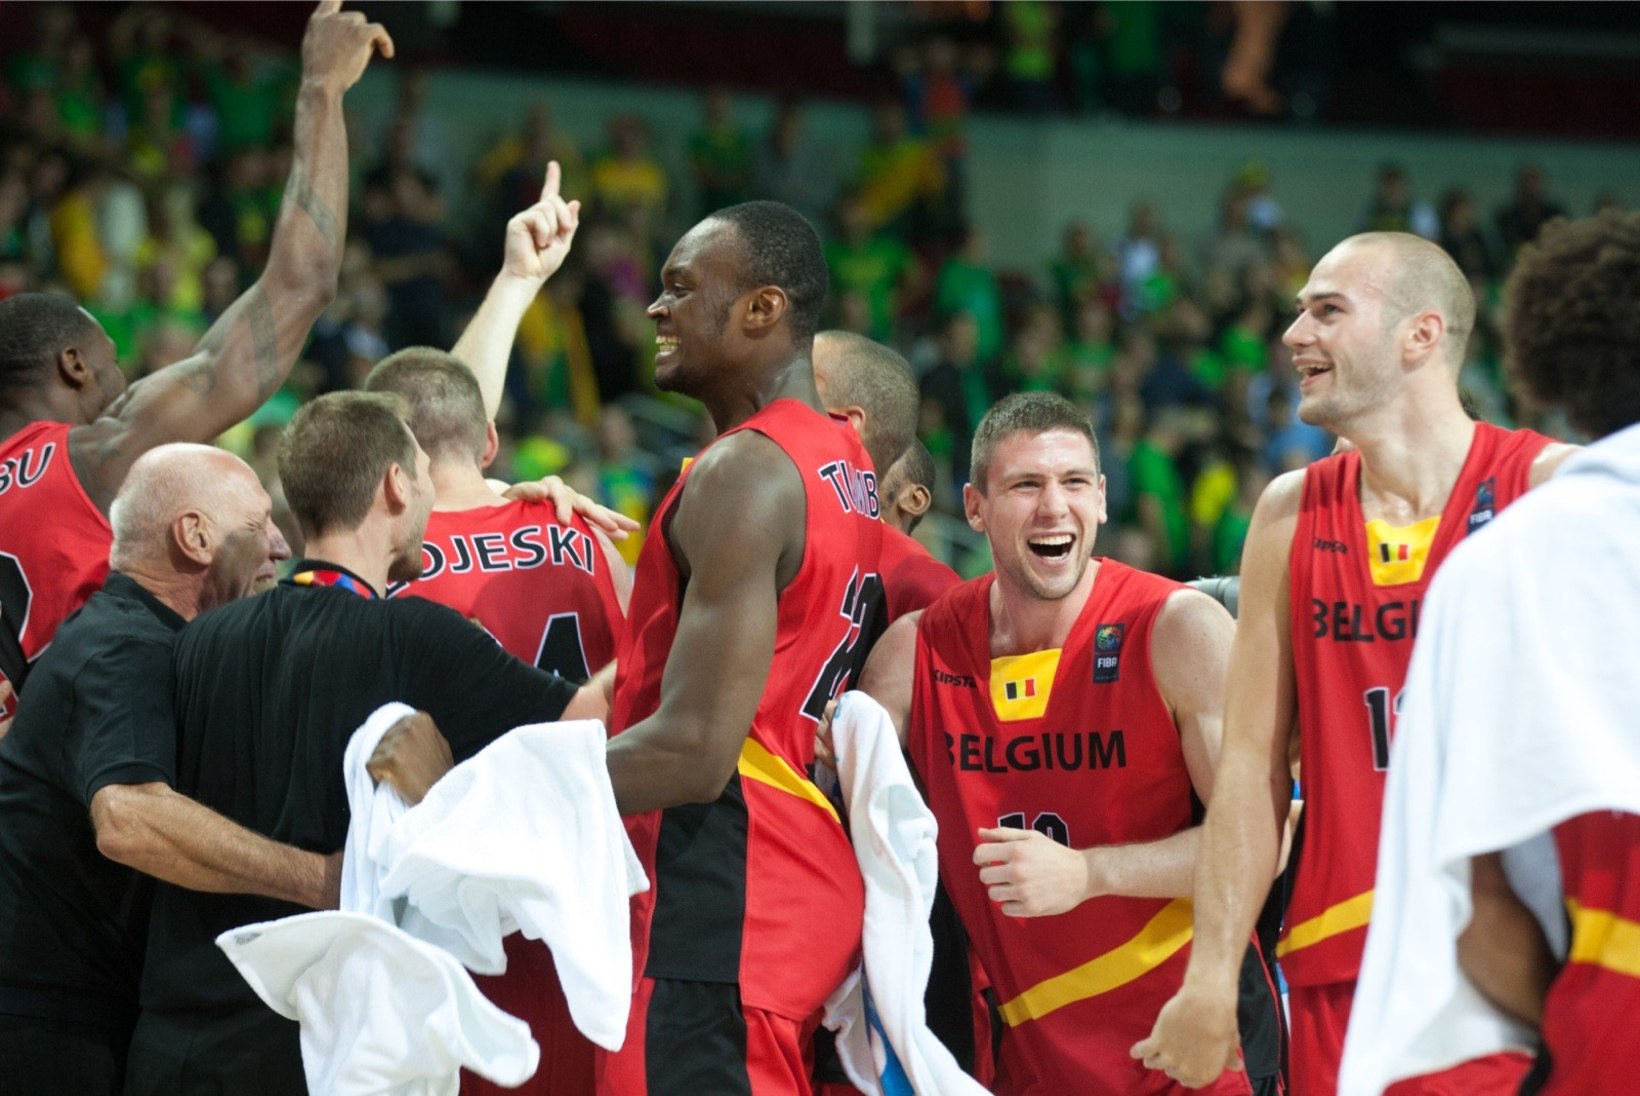 ÕHTULEHT RIIAS | Belgia pääses edasi, selgunud on Eesti vastane, kui jõuame play-off'i